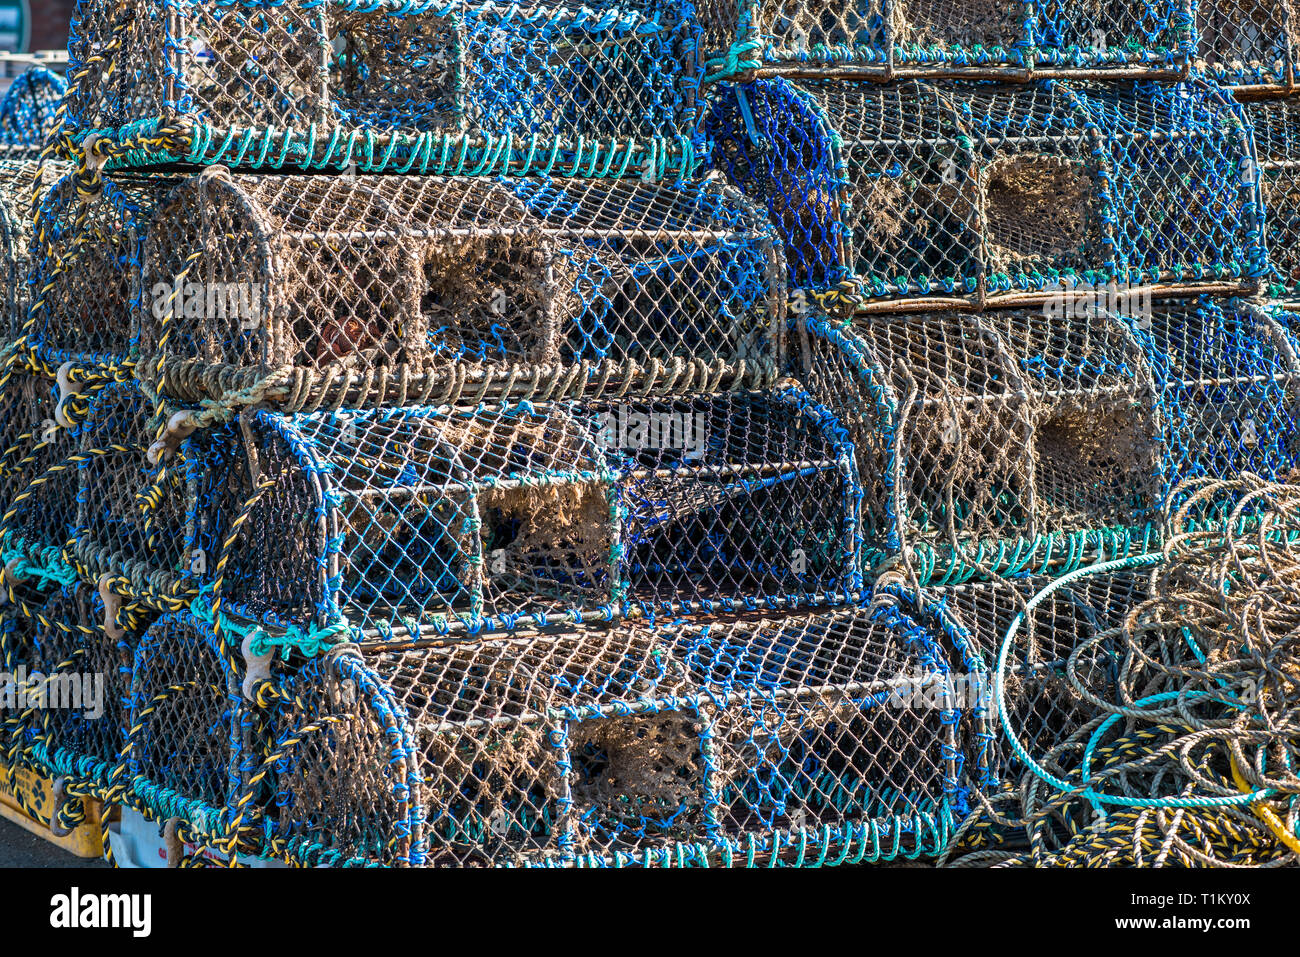 Des casiers à homard et crabe à la nasse ou empilés sur Wells-next-the-Sea front de mer. North Norfolk Coast, East Anglia, Angleterre, Royaume-Uni. Banque D'Images